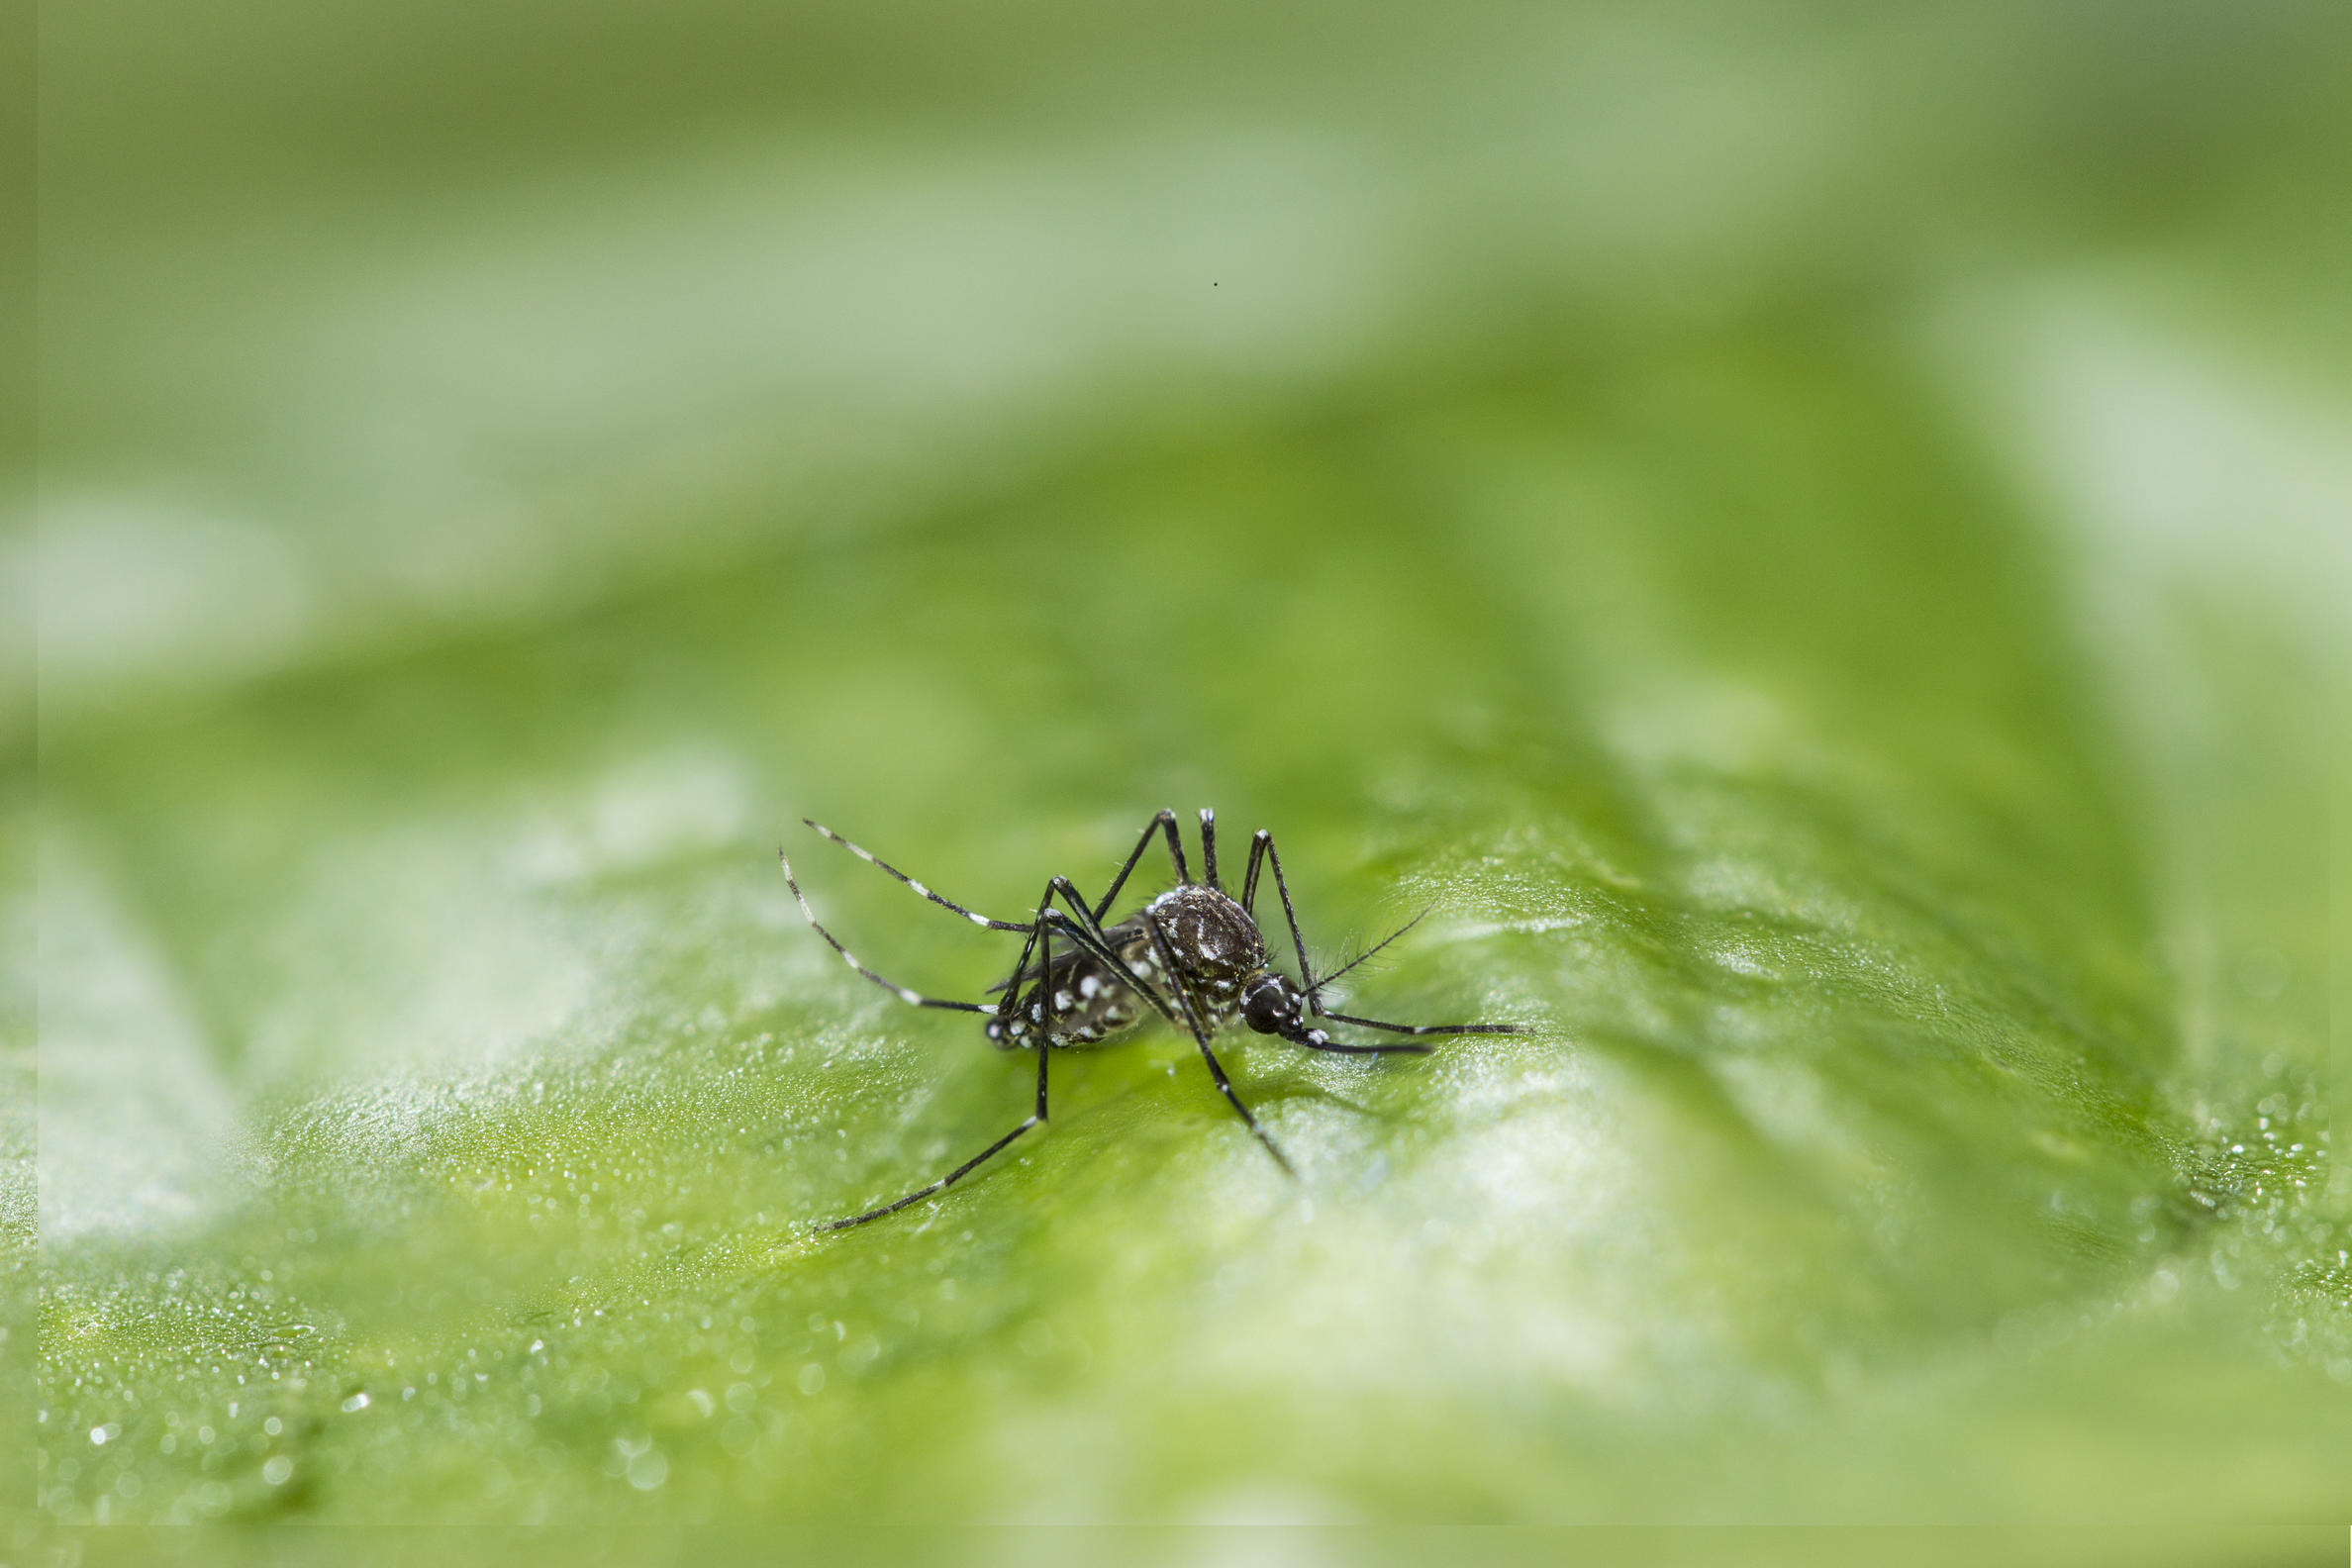 Hembra de Aedes aegypti. Foto: V. Cevallos, CIREV INSPI.